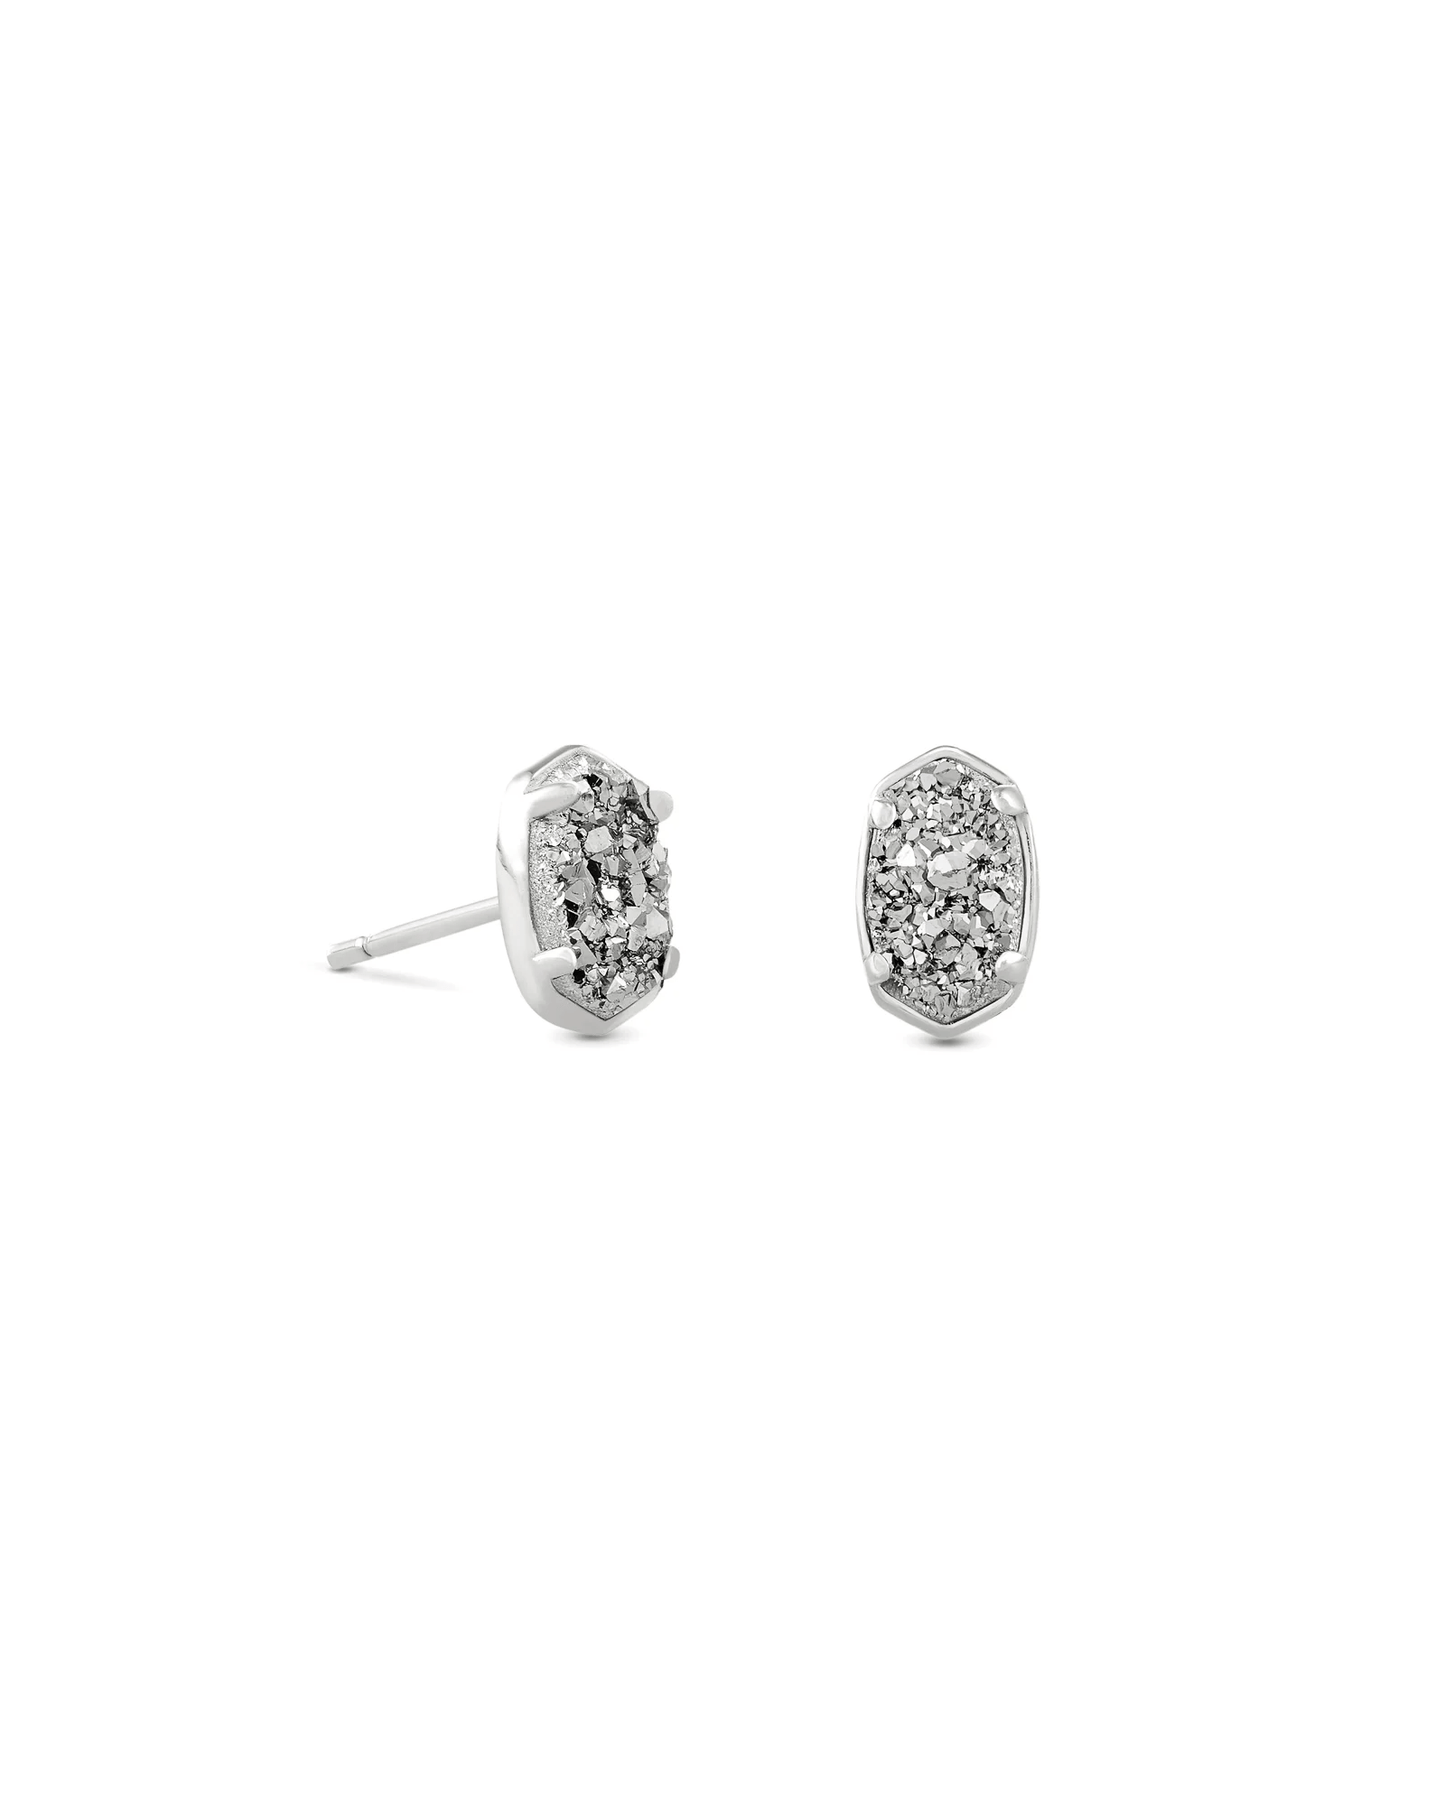 Kendra Scott Women - Accessories - Earrings Emilie Silver Stud Earrings in Platinum Drusy | Kendra Scott